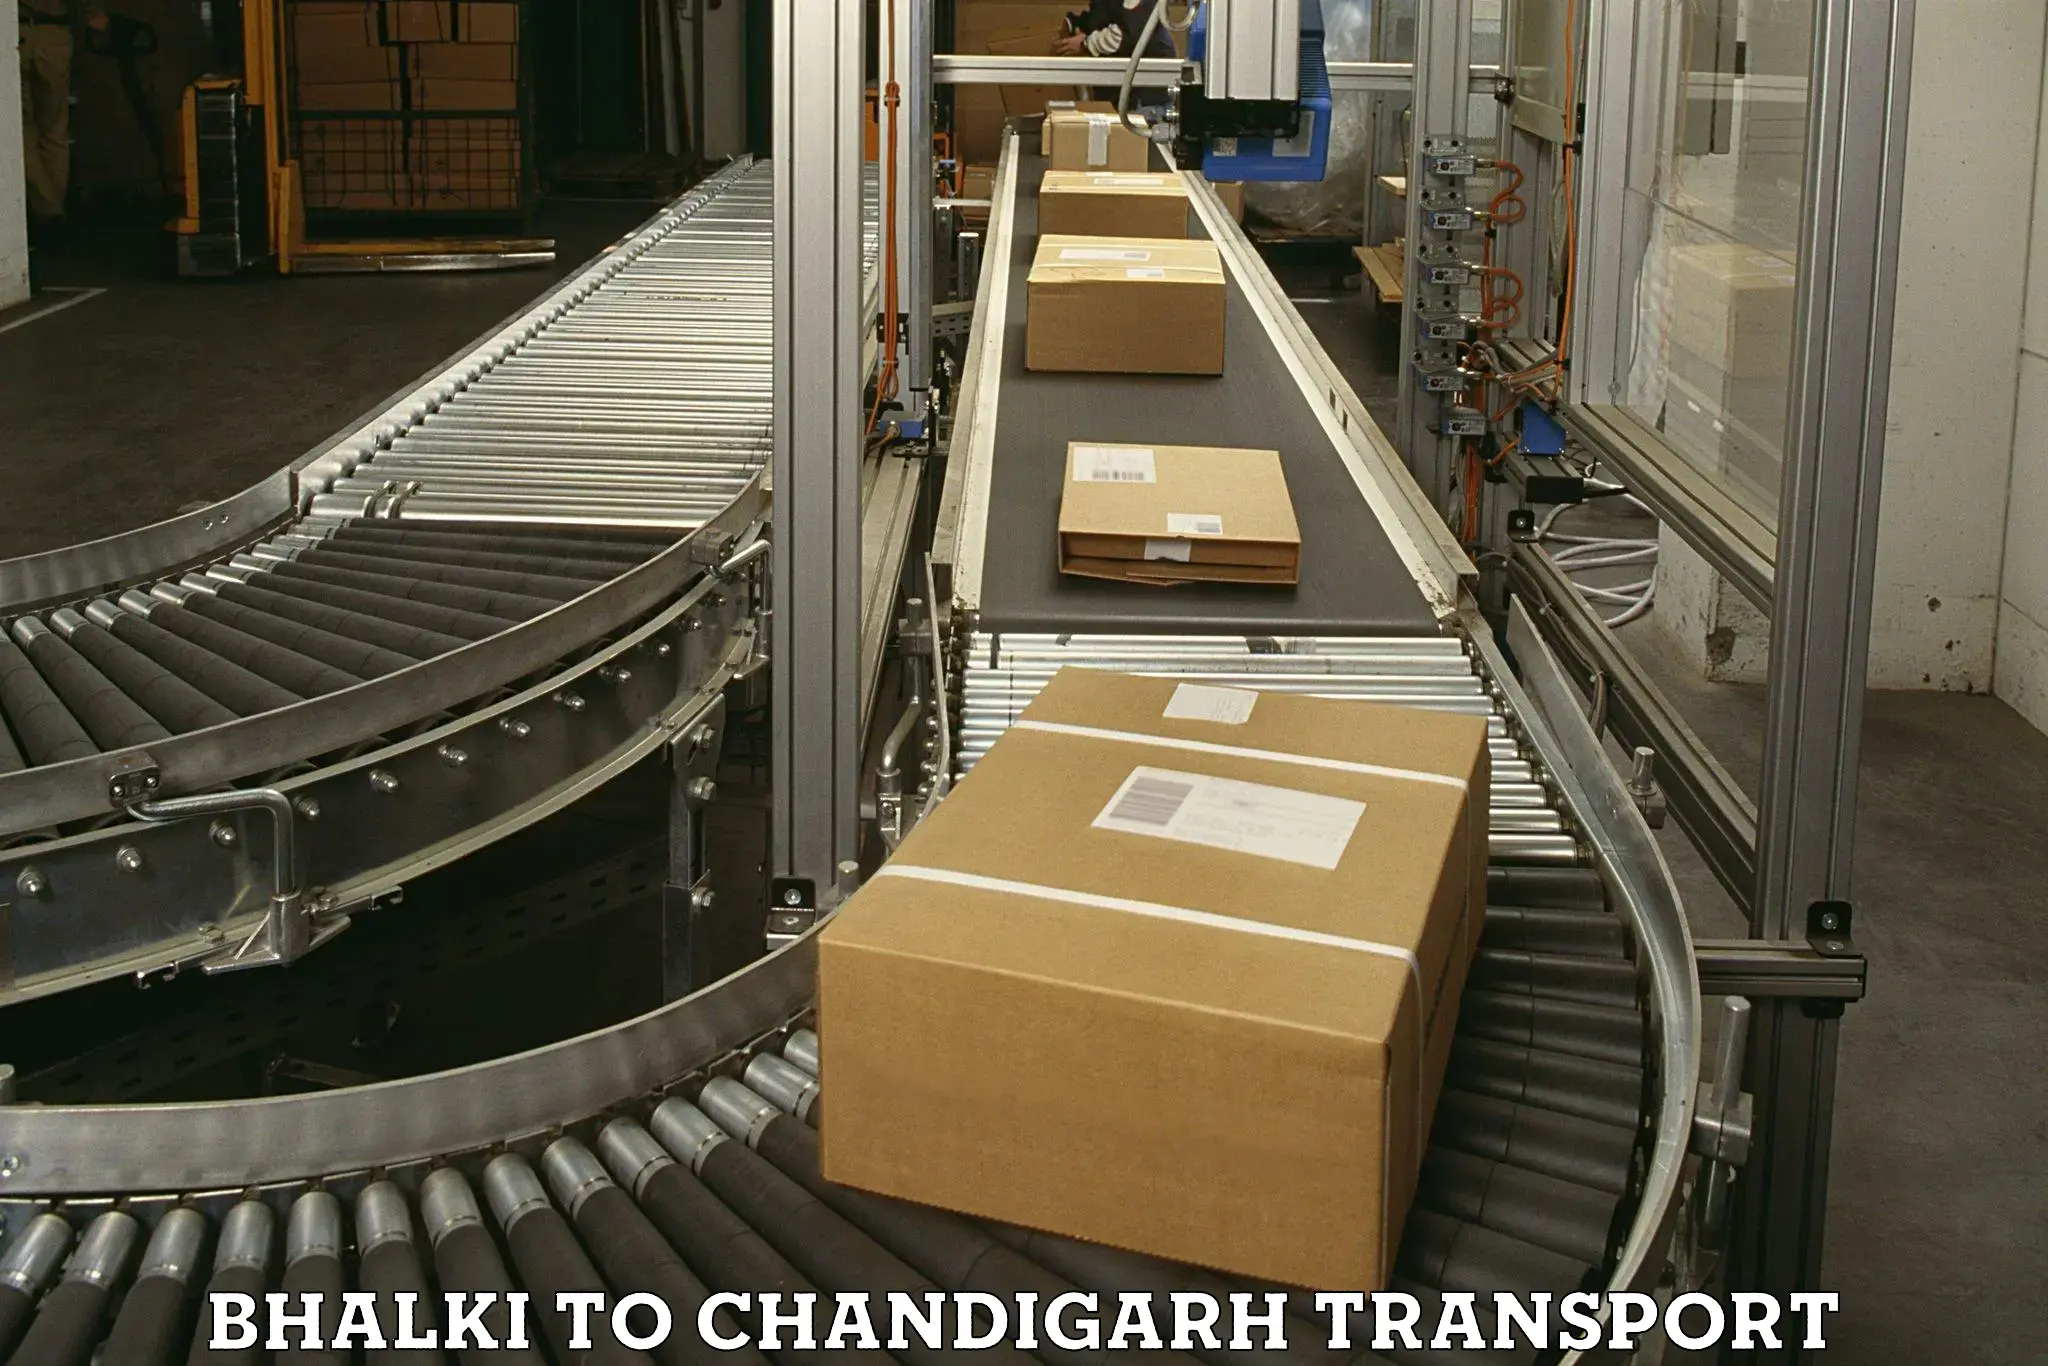 Online transport service Bhalki to Chandigarh